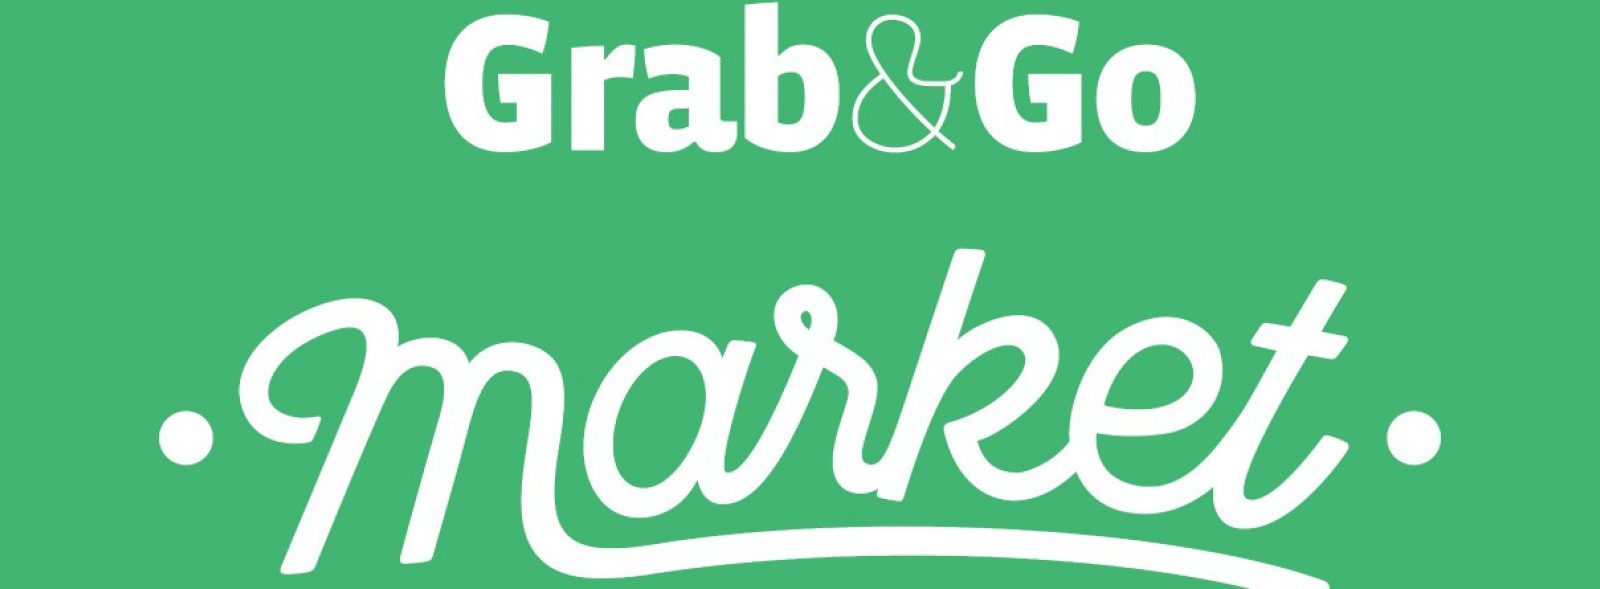 Grab & Go cria ‘minimercado automático’ e pisca o olho ao mercado farmacêutico